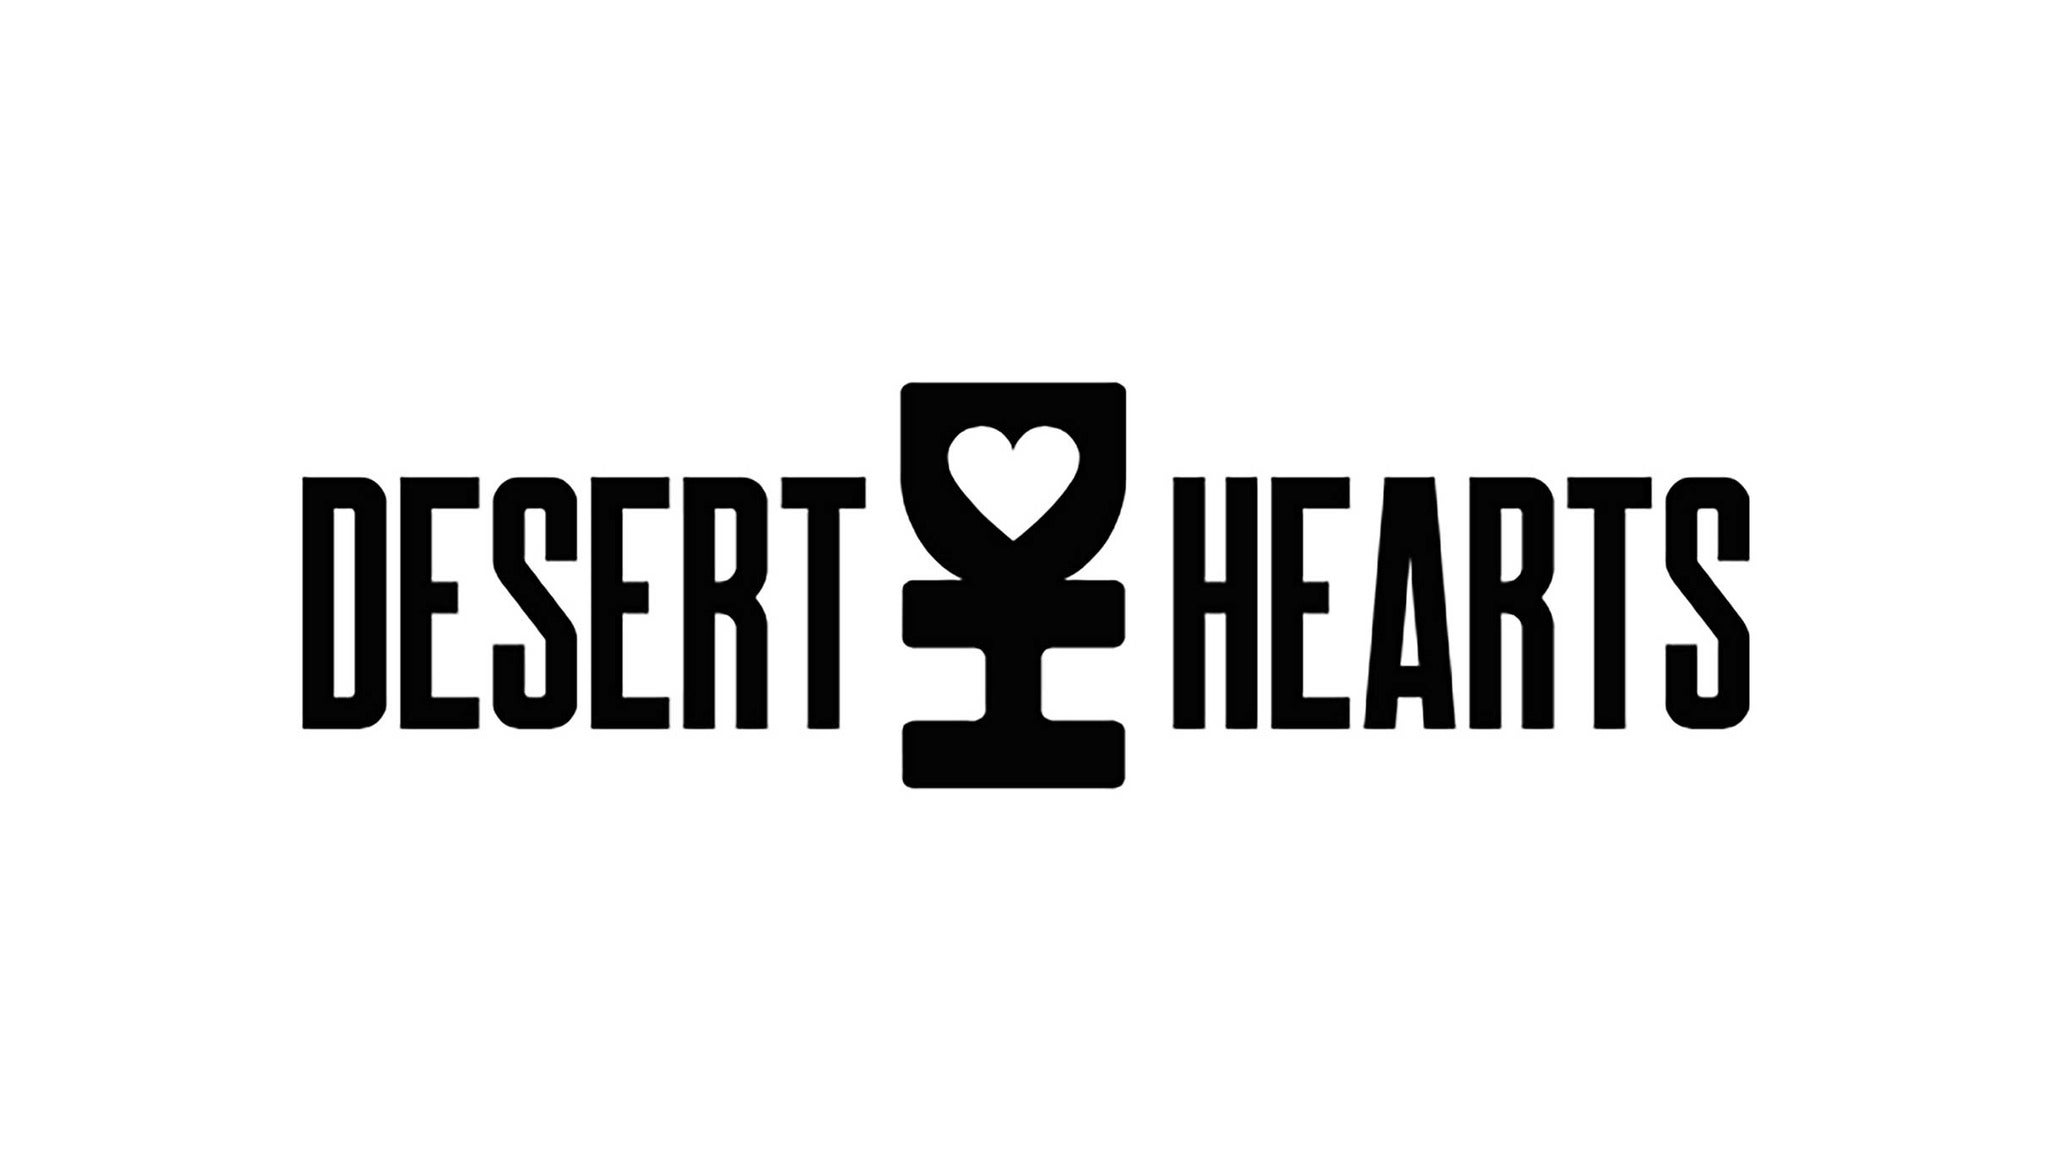 Desert Hearts w/ Mikey Lion at PRYSM Nightclub